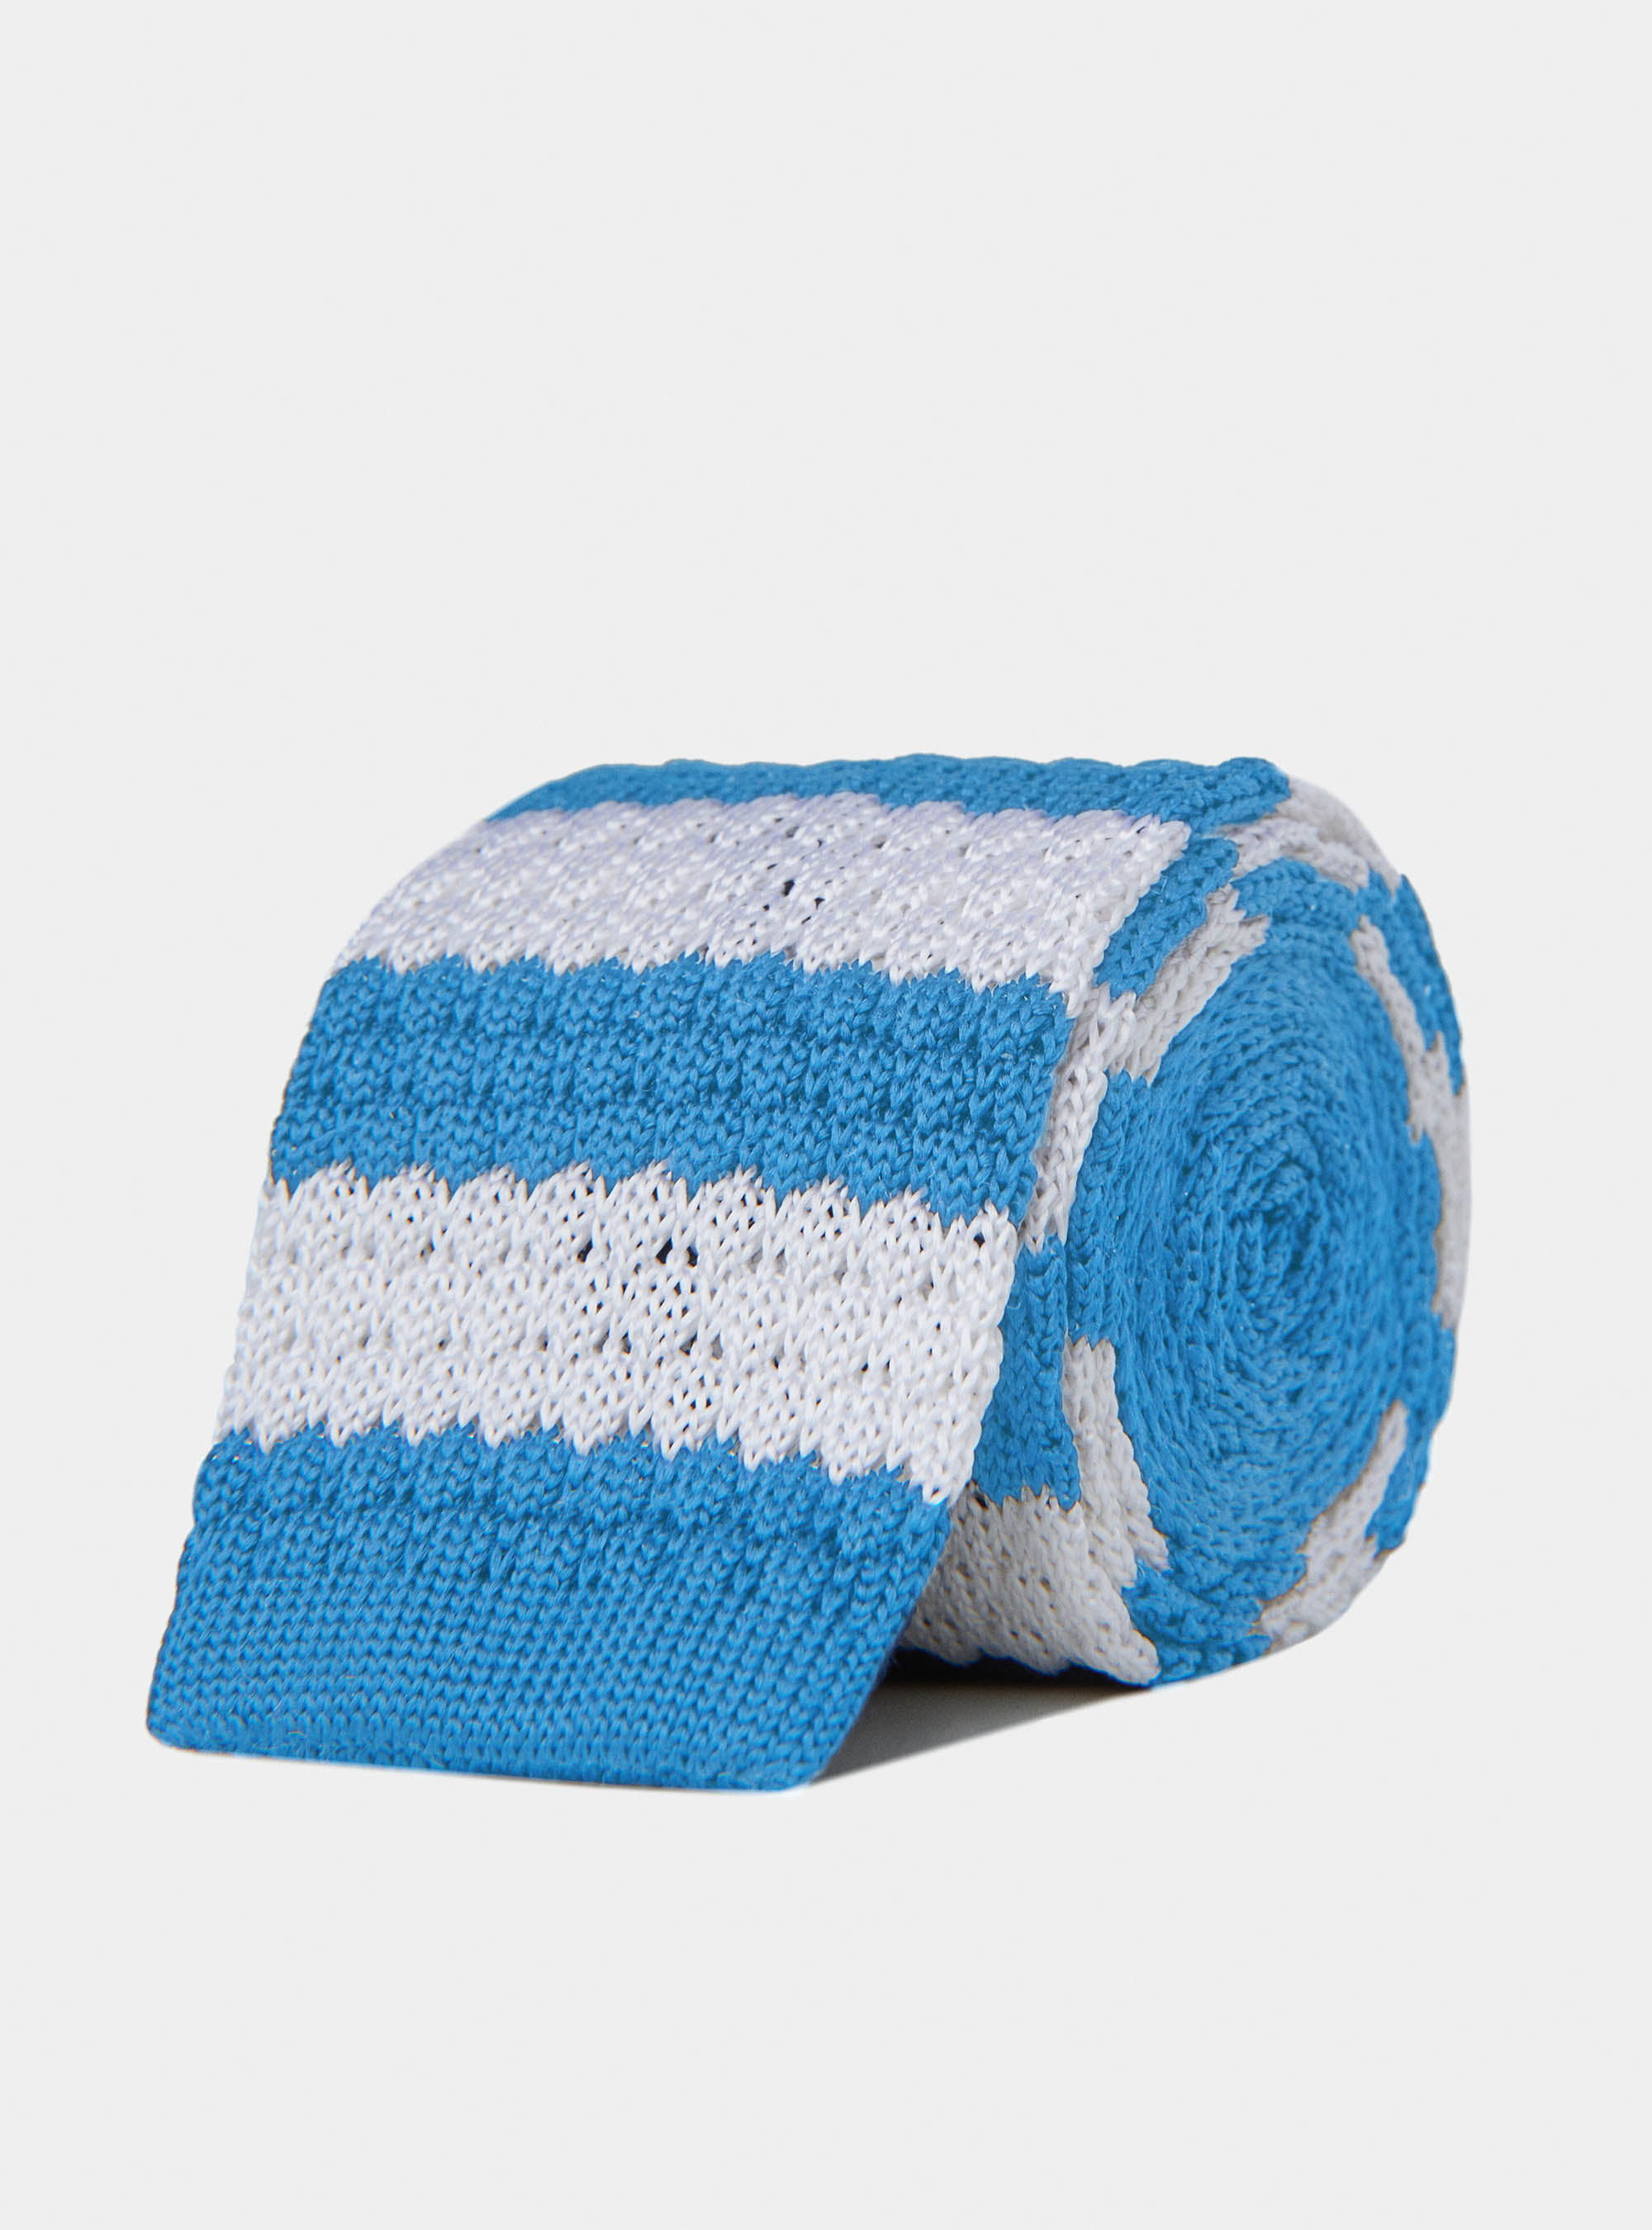 Gutteridge - Cravatta in maglia a righe, Unisex, Azzurro 0278c, Taglia: Unica